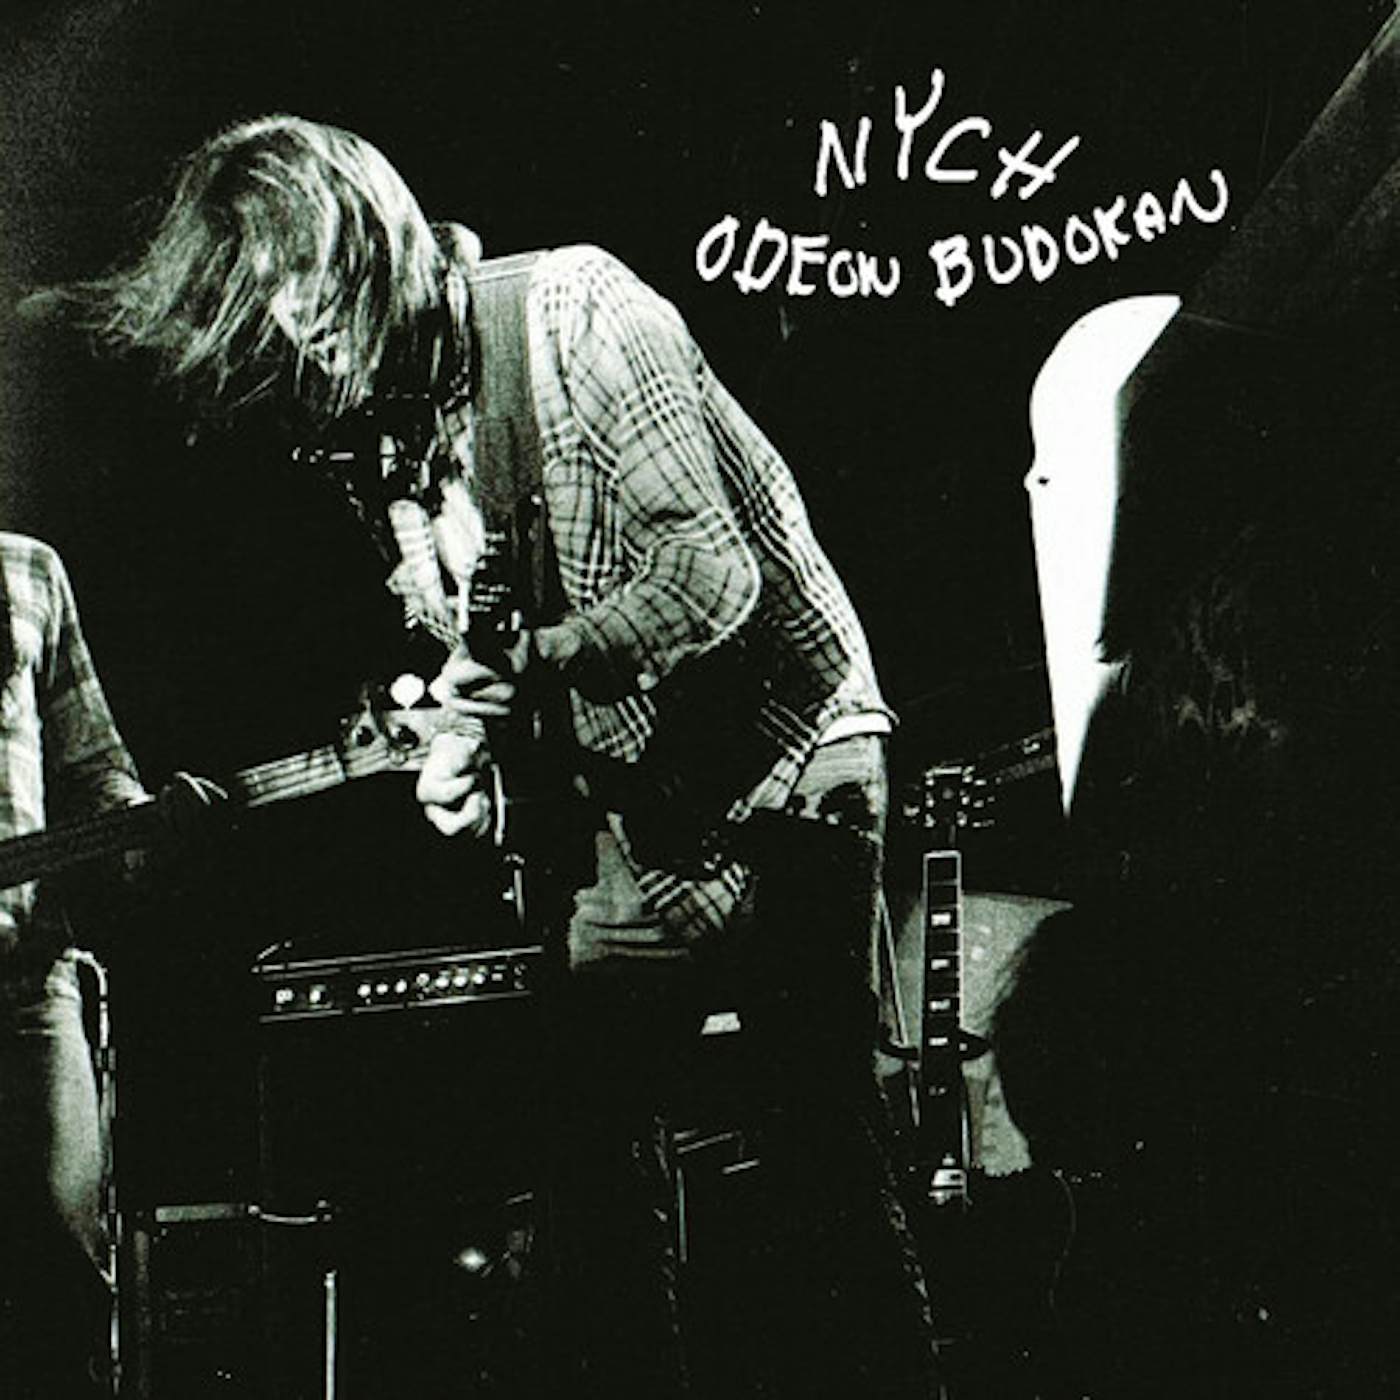 Neil Young & Crazy Horse Odeon Budokan Vinyl Record